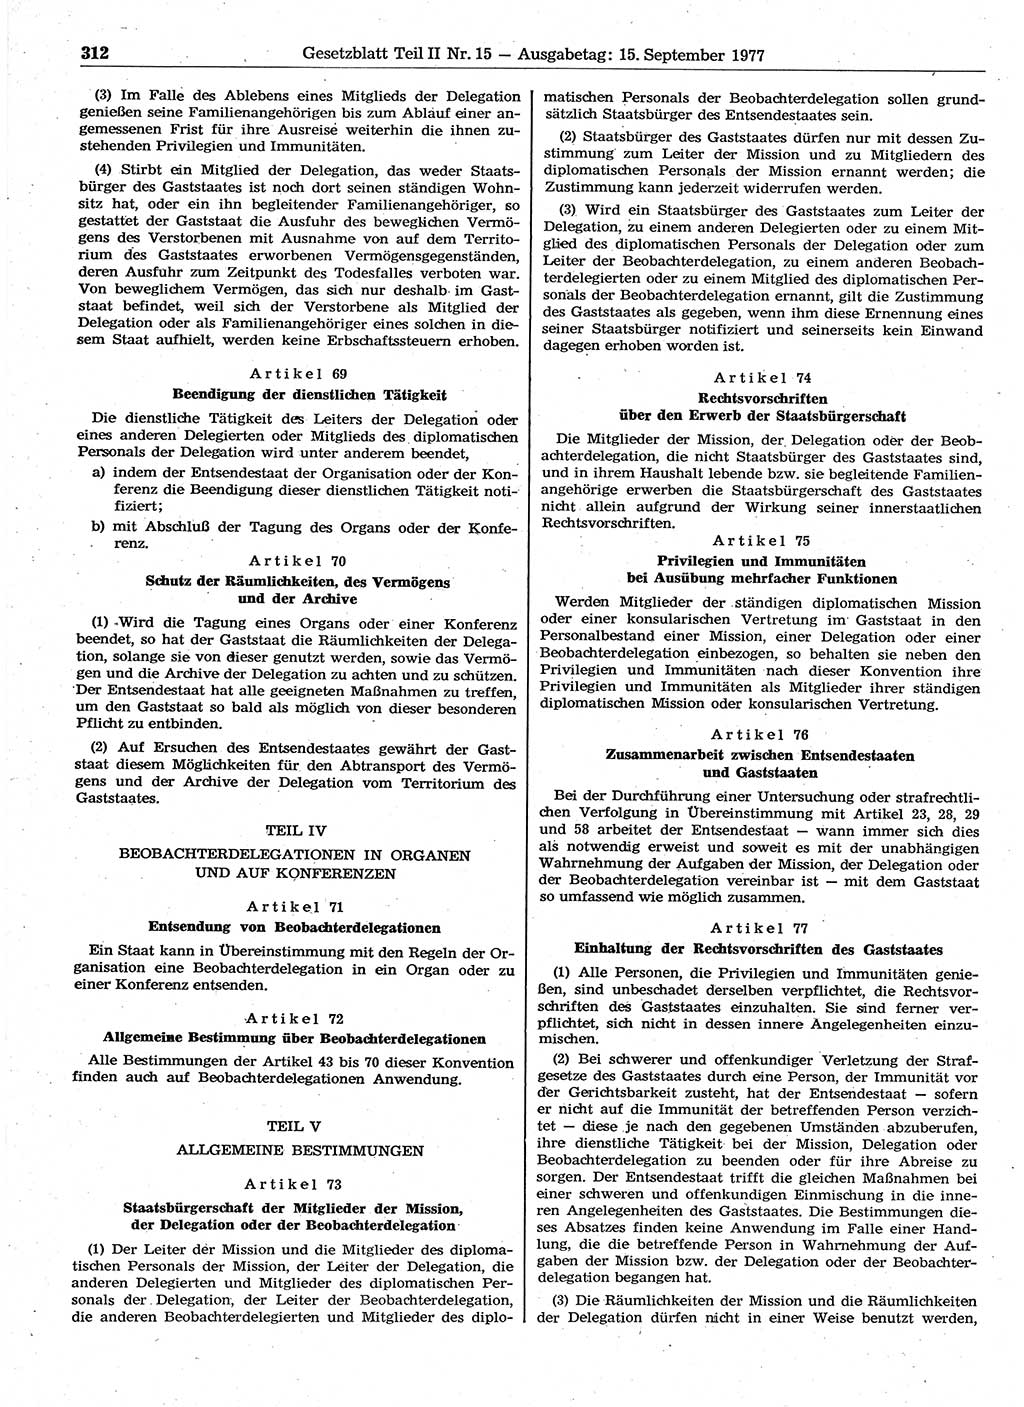 Gesetzblatt (GBl.) der Deutschen Demokratischen Republik (DDR) Teil ⅠⅠ 1977, Seite 312 (GBl. DDR ⅠⅠ 1977, S. 312)